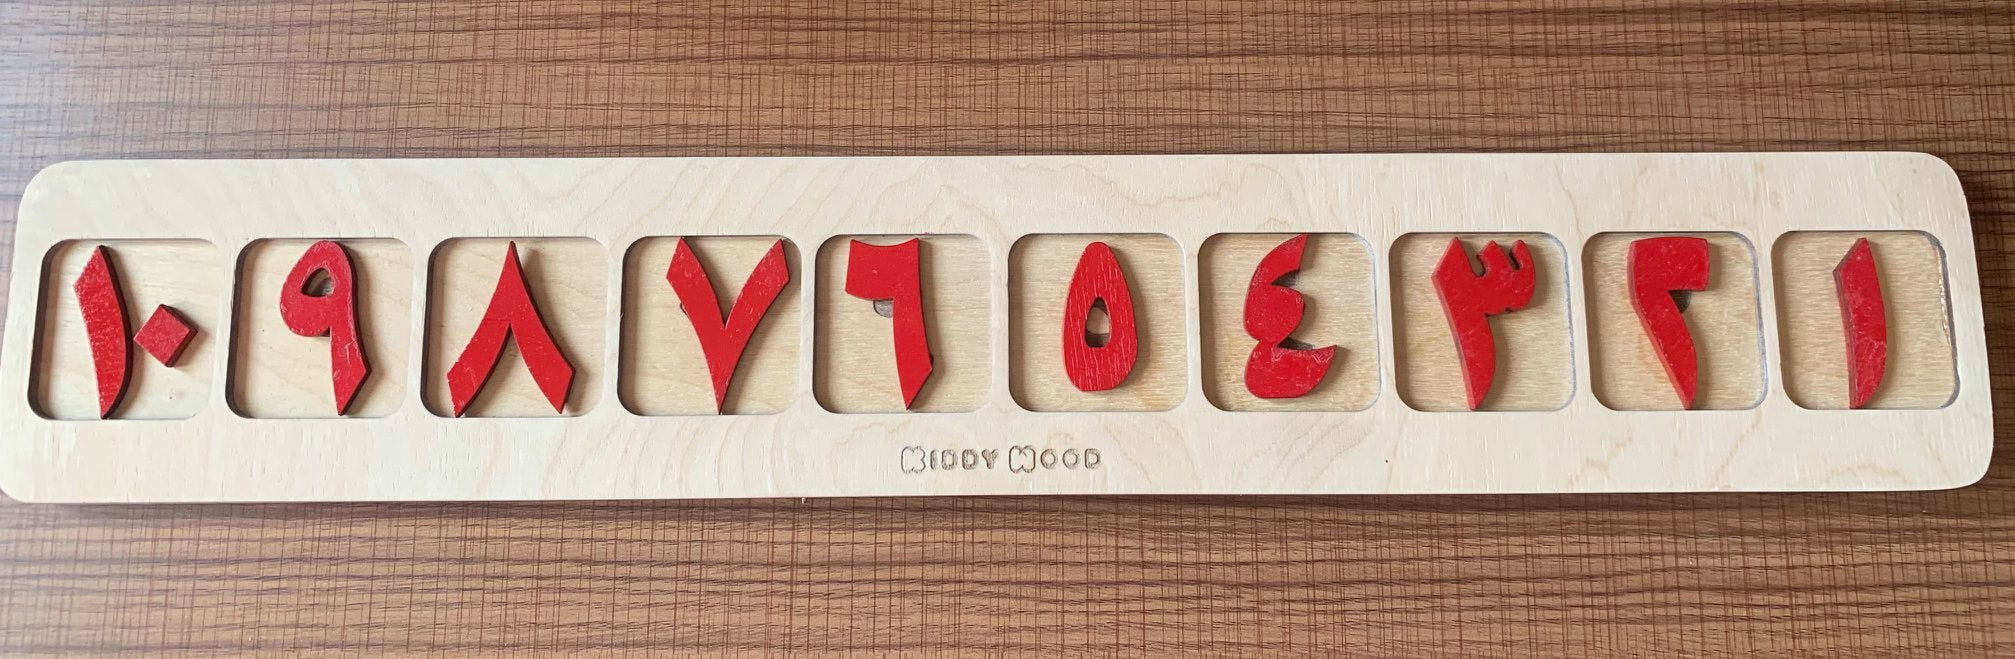 Two-sided number plate - لوحه الارقام وجهين مع قواشيط العد